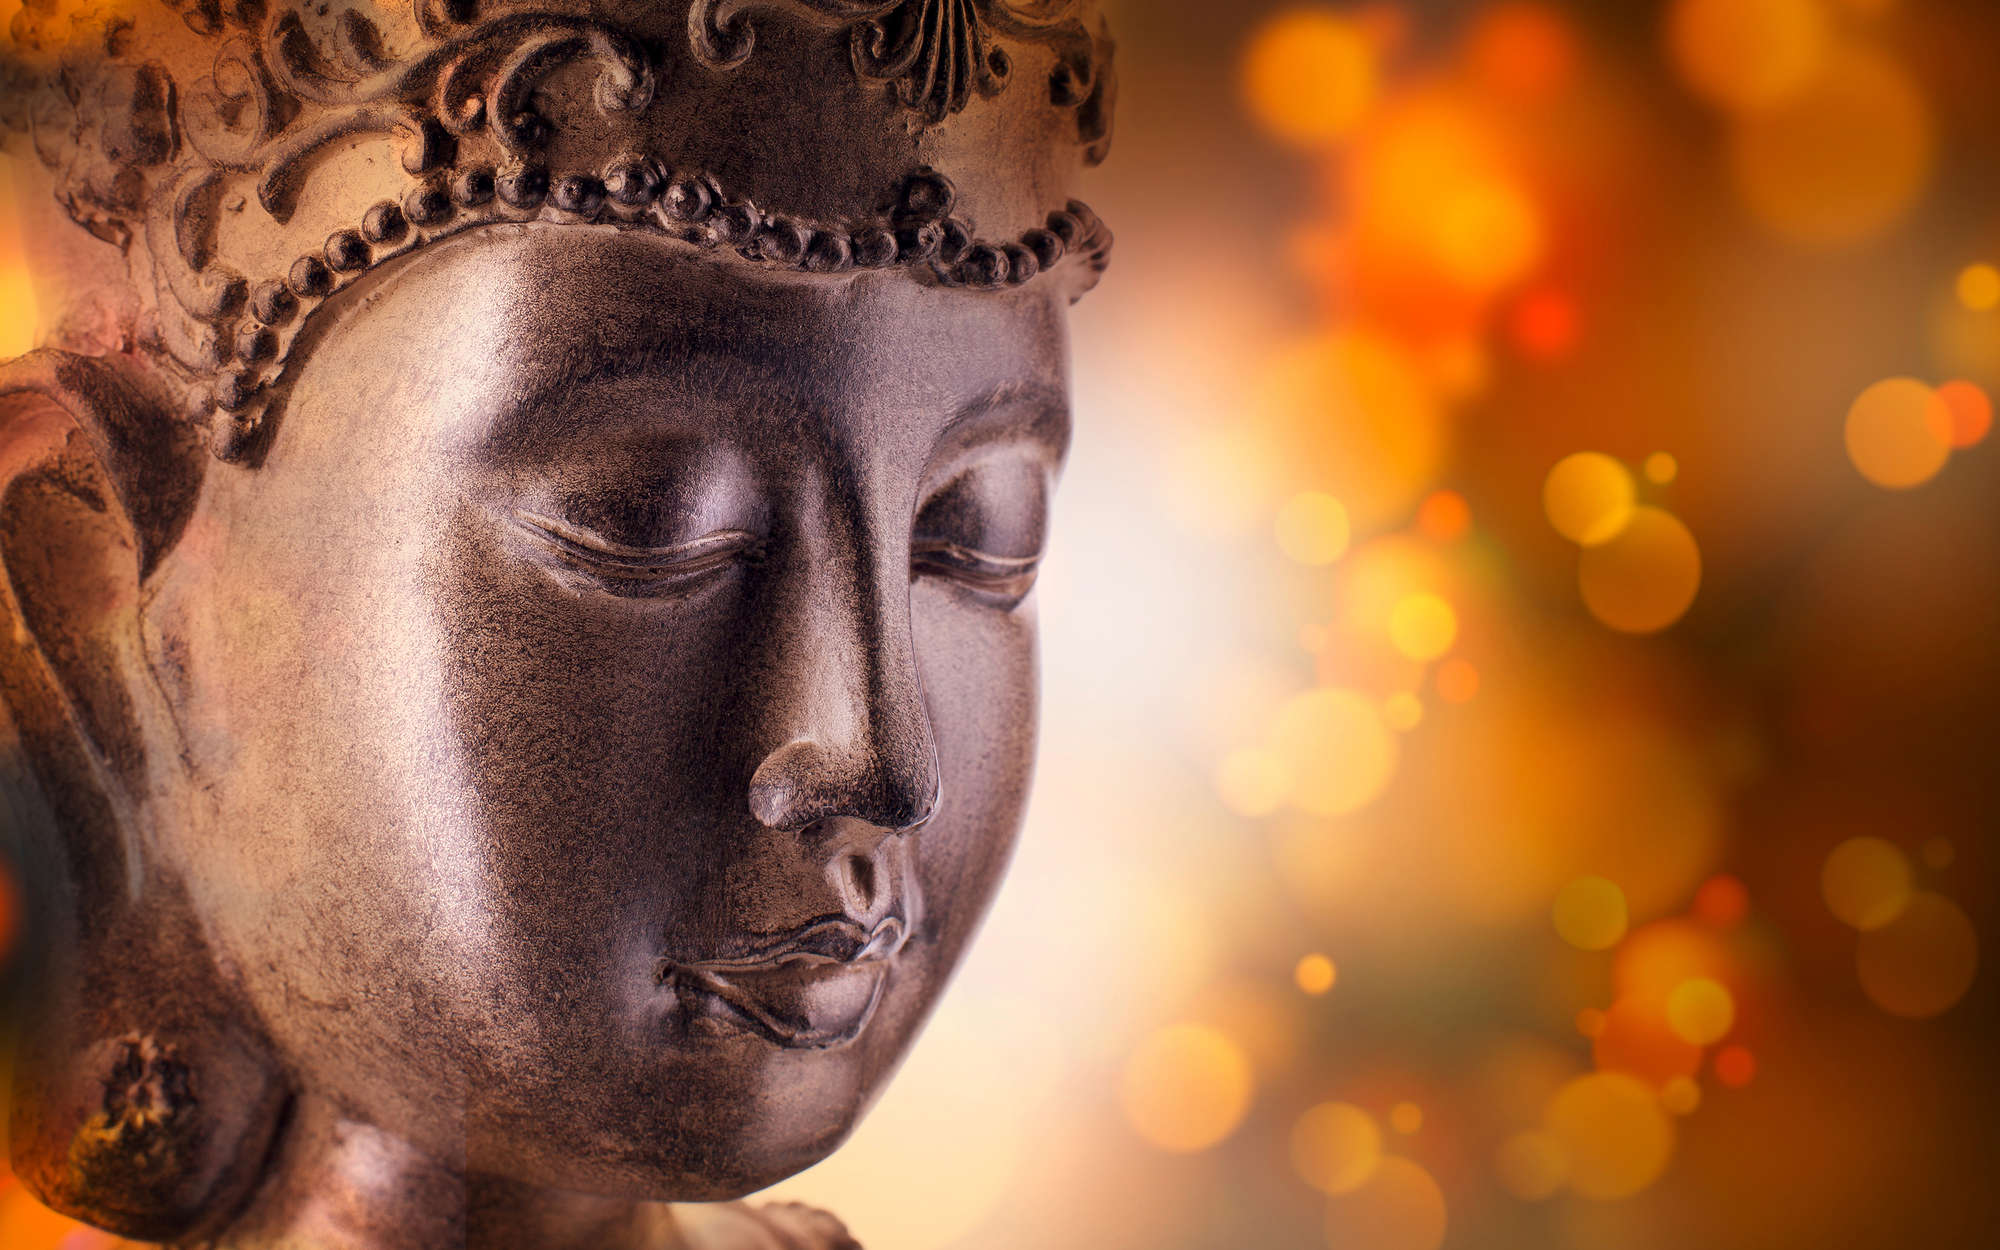             Fototapete Detailaufnahme von Buddha-Statue – Mattes Glattvlies
        